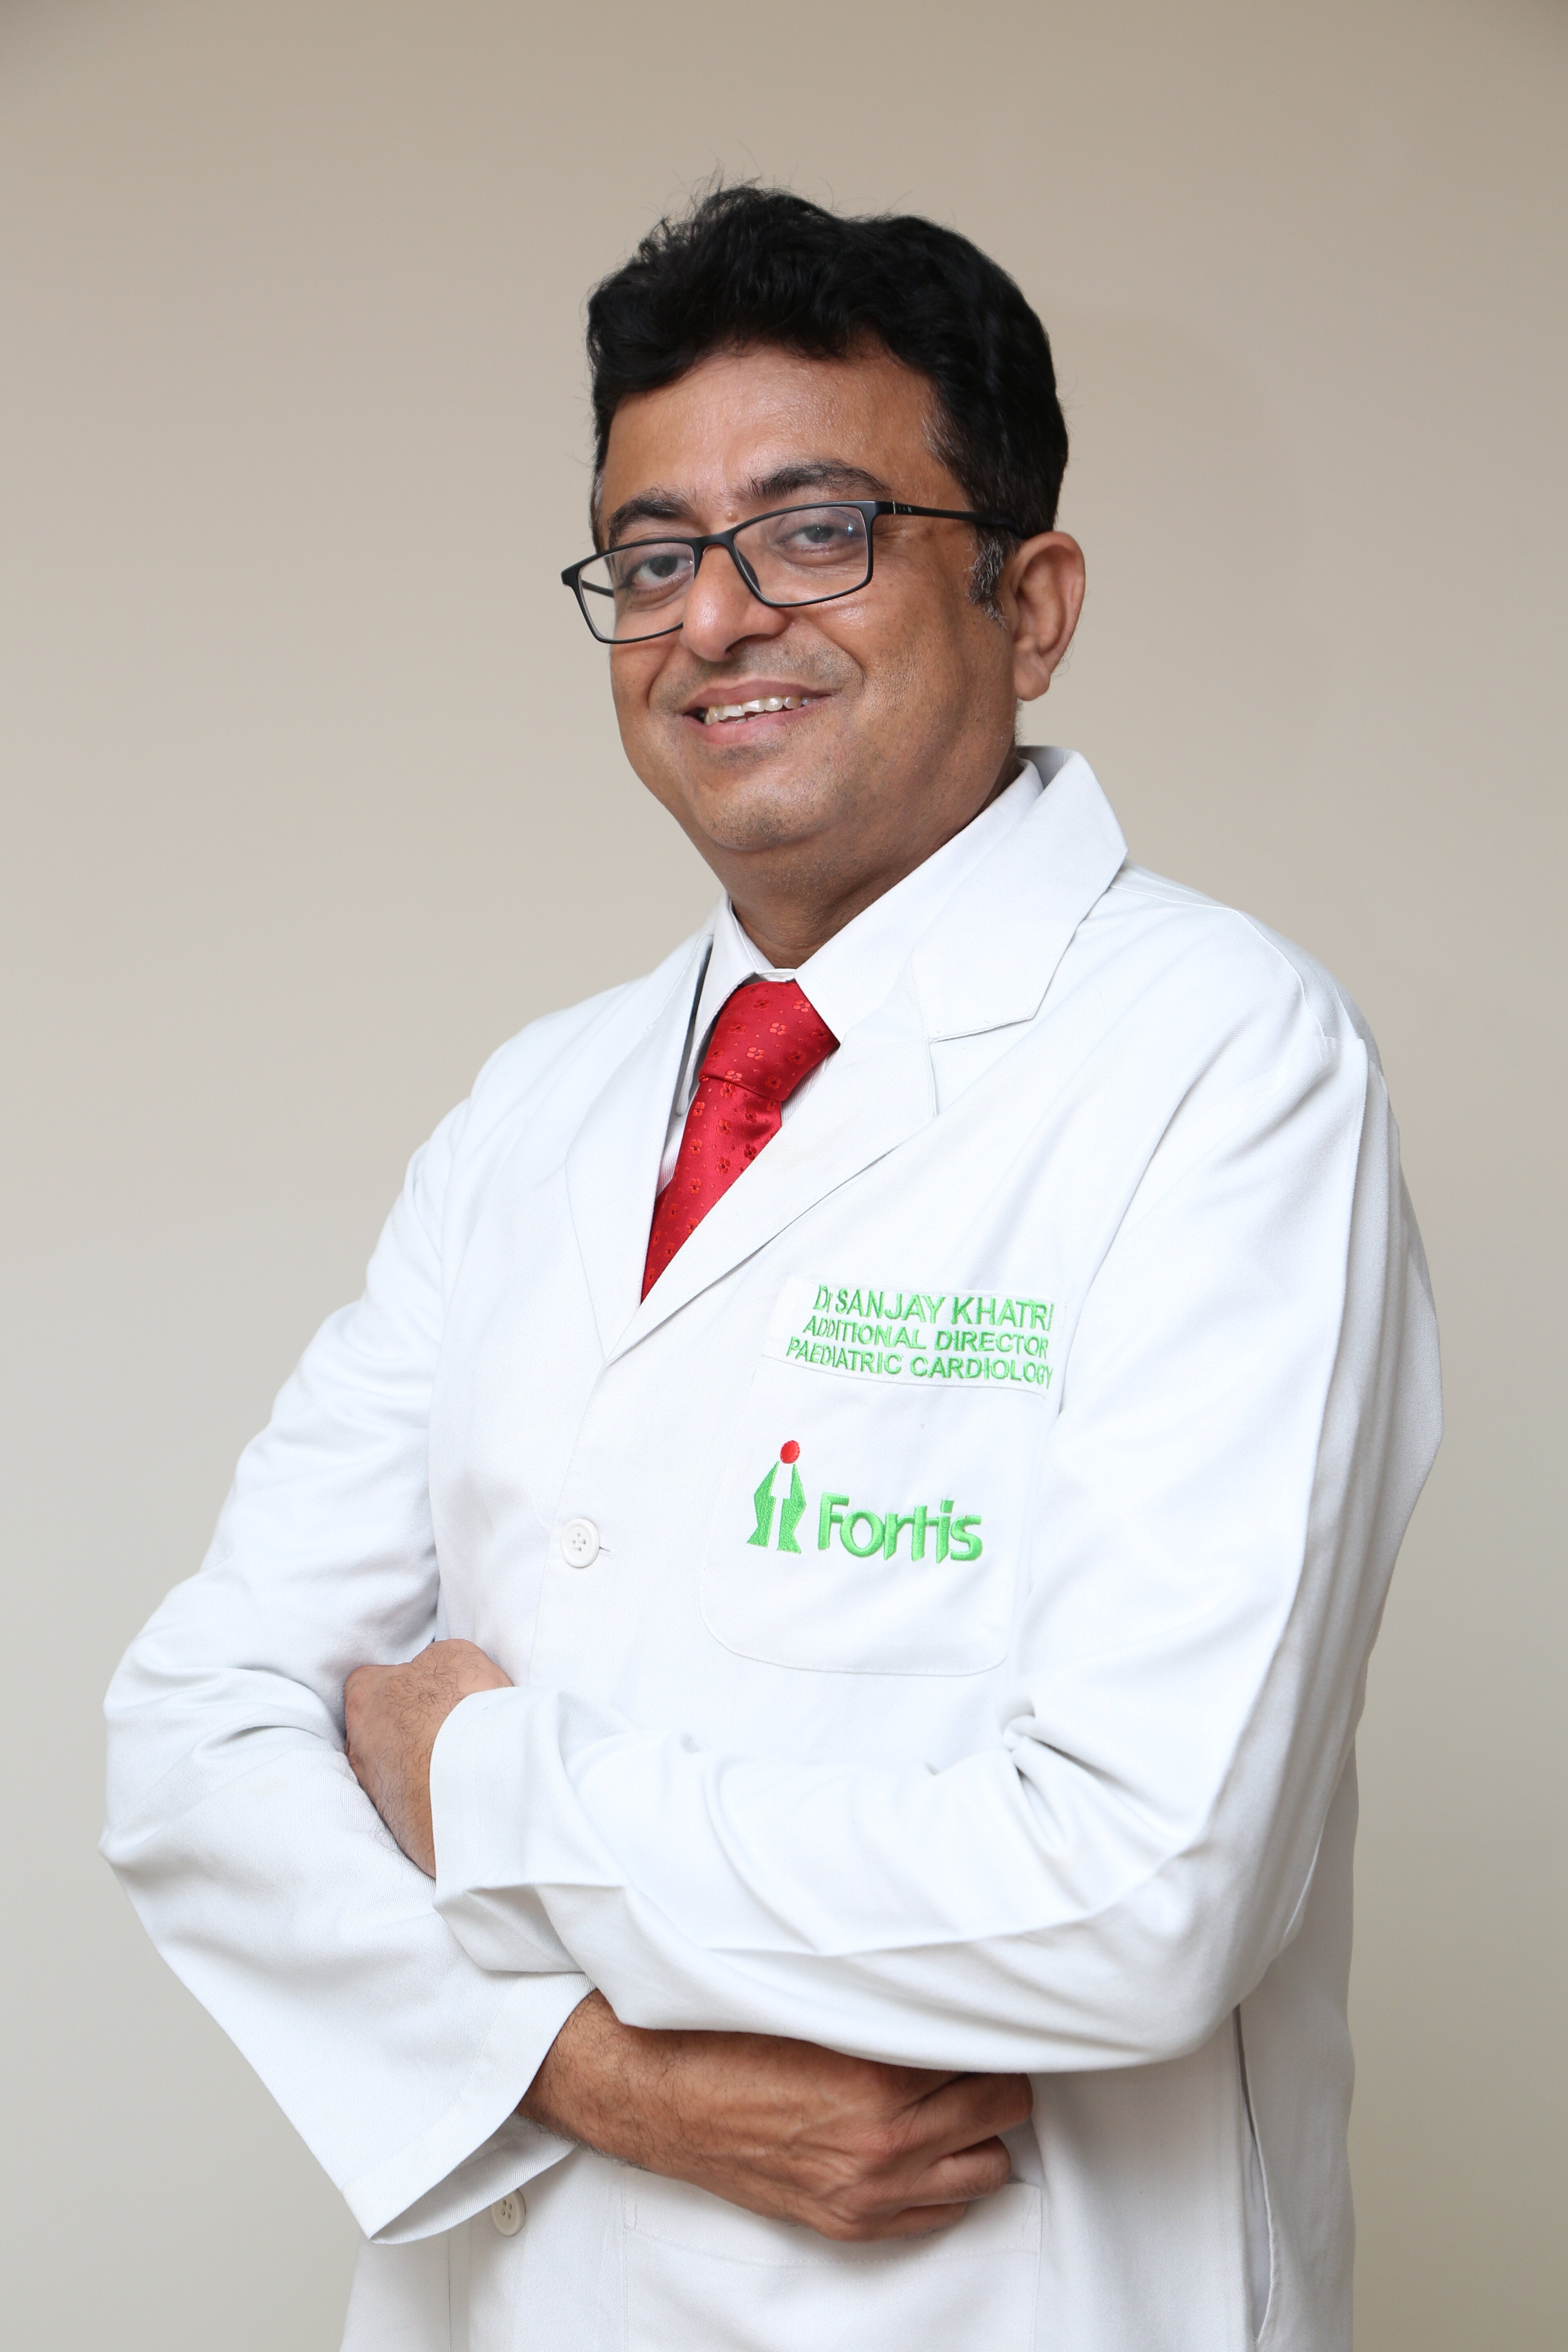 Sanjay Khatri博士